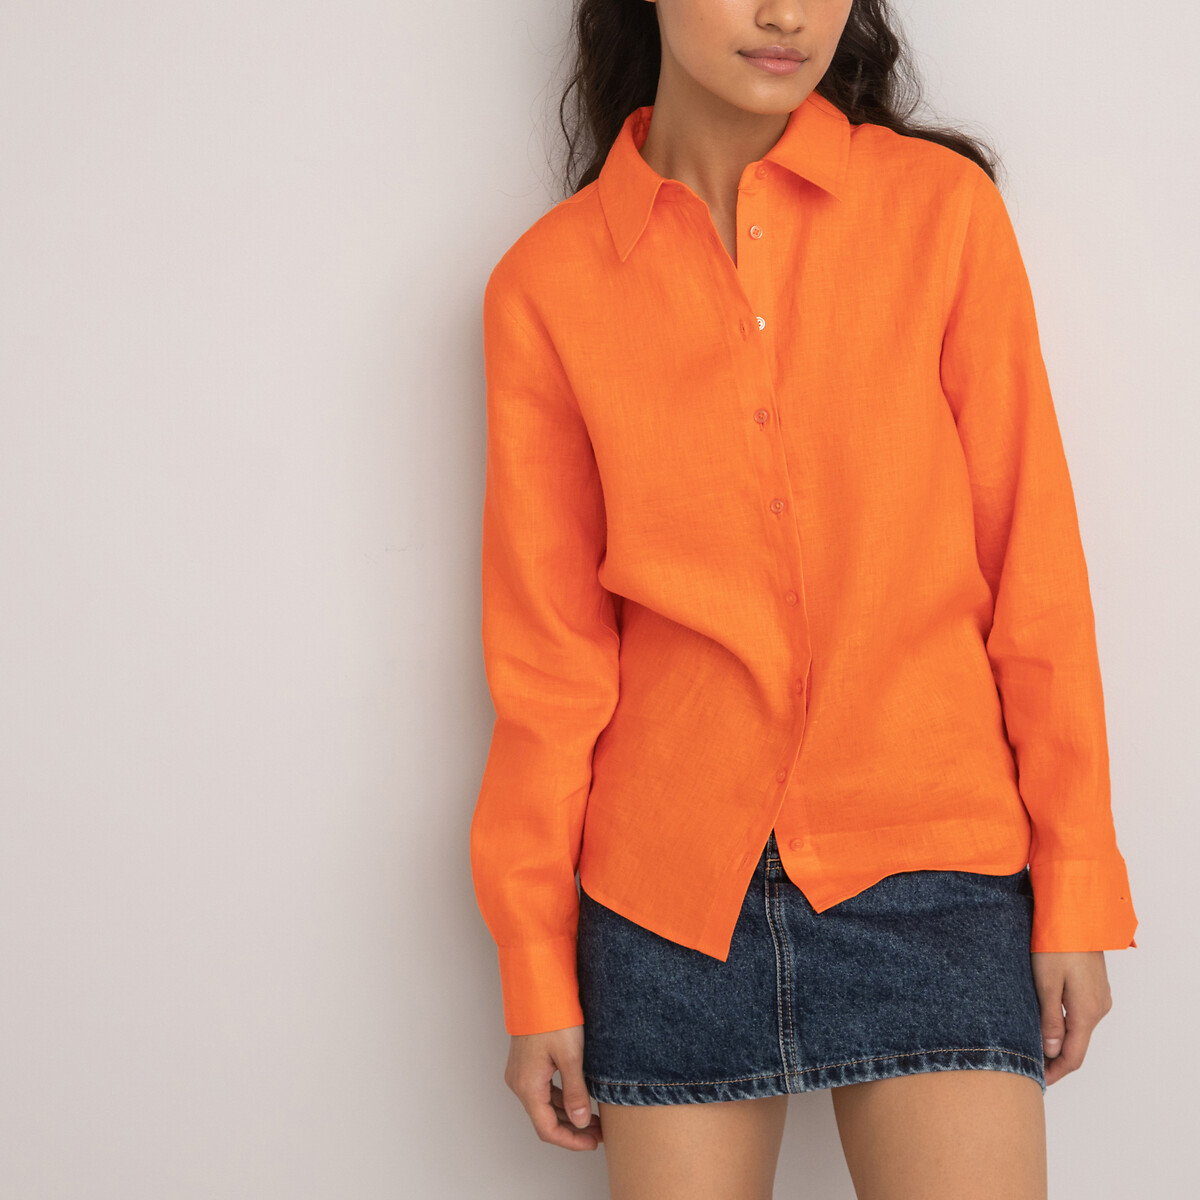 Рубашка Из льна с длинными рукавами 46 (FR) - 52 (RUS) оранжевый LaRedoute, размер 46 (FR) - 52 (RUS) Рубашка Из льна с длинными рукавами 46 (FR) - 52 (RUS) оранжевый - фото 5